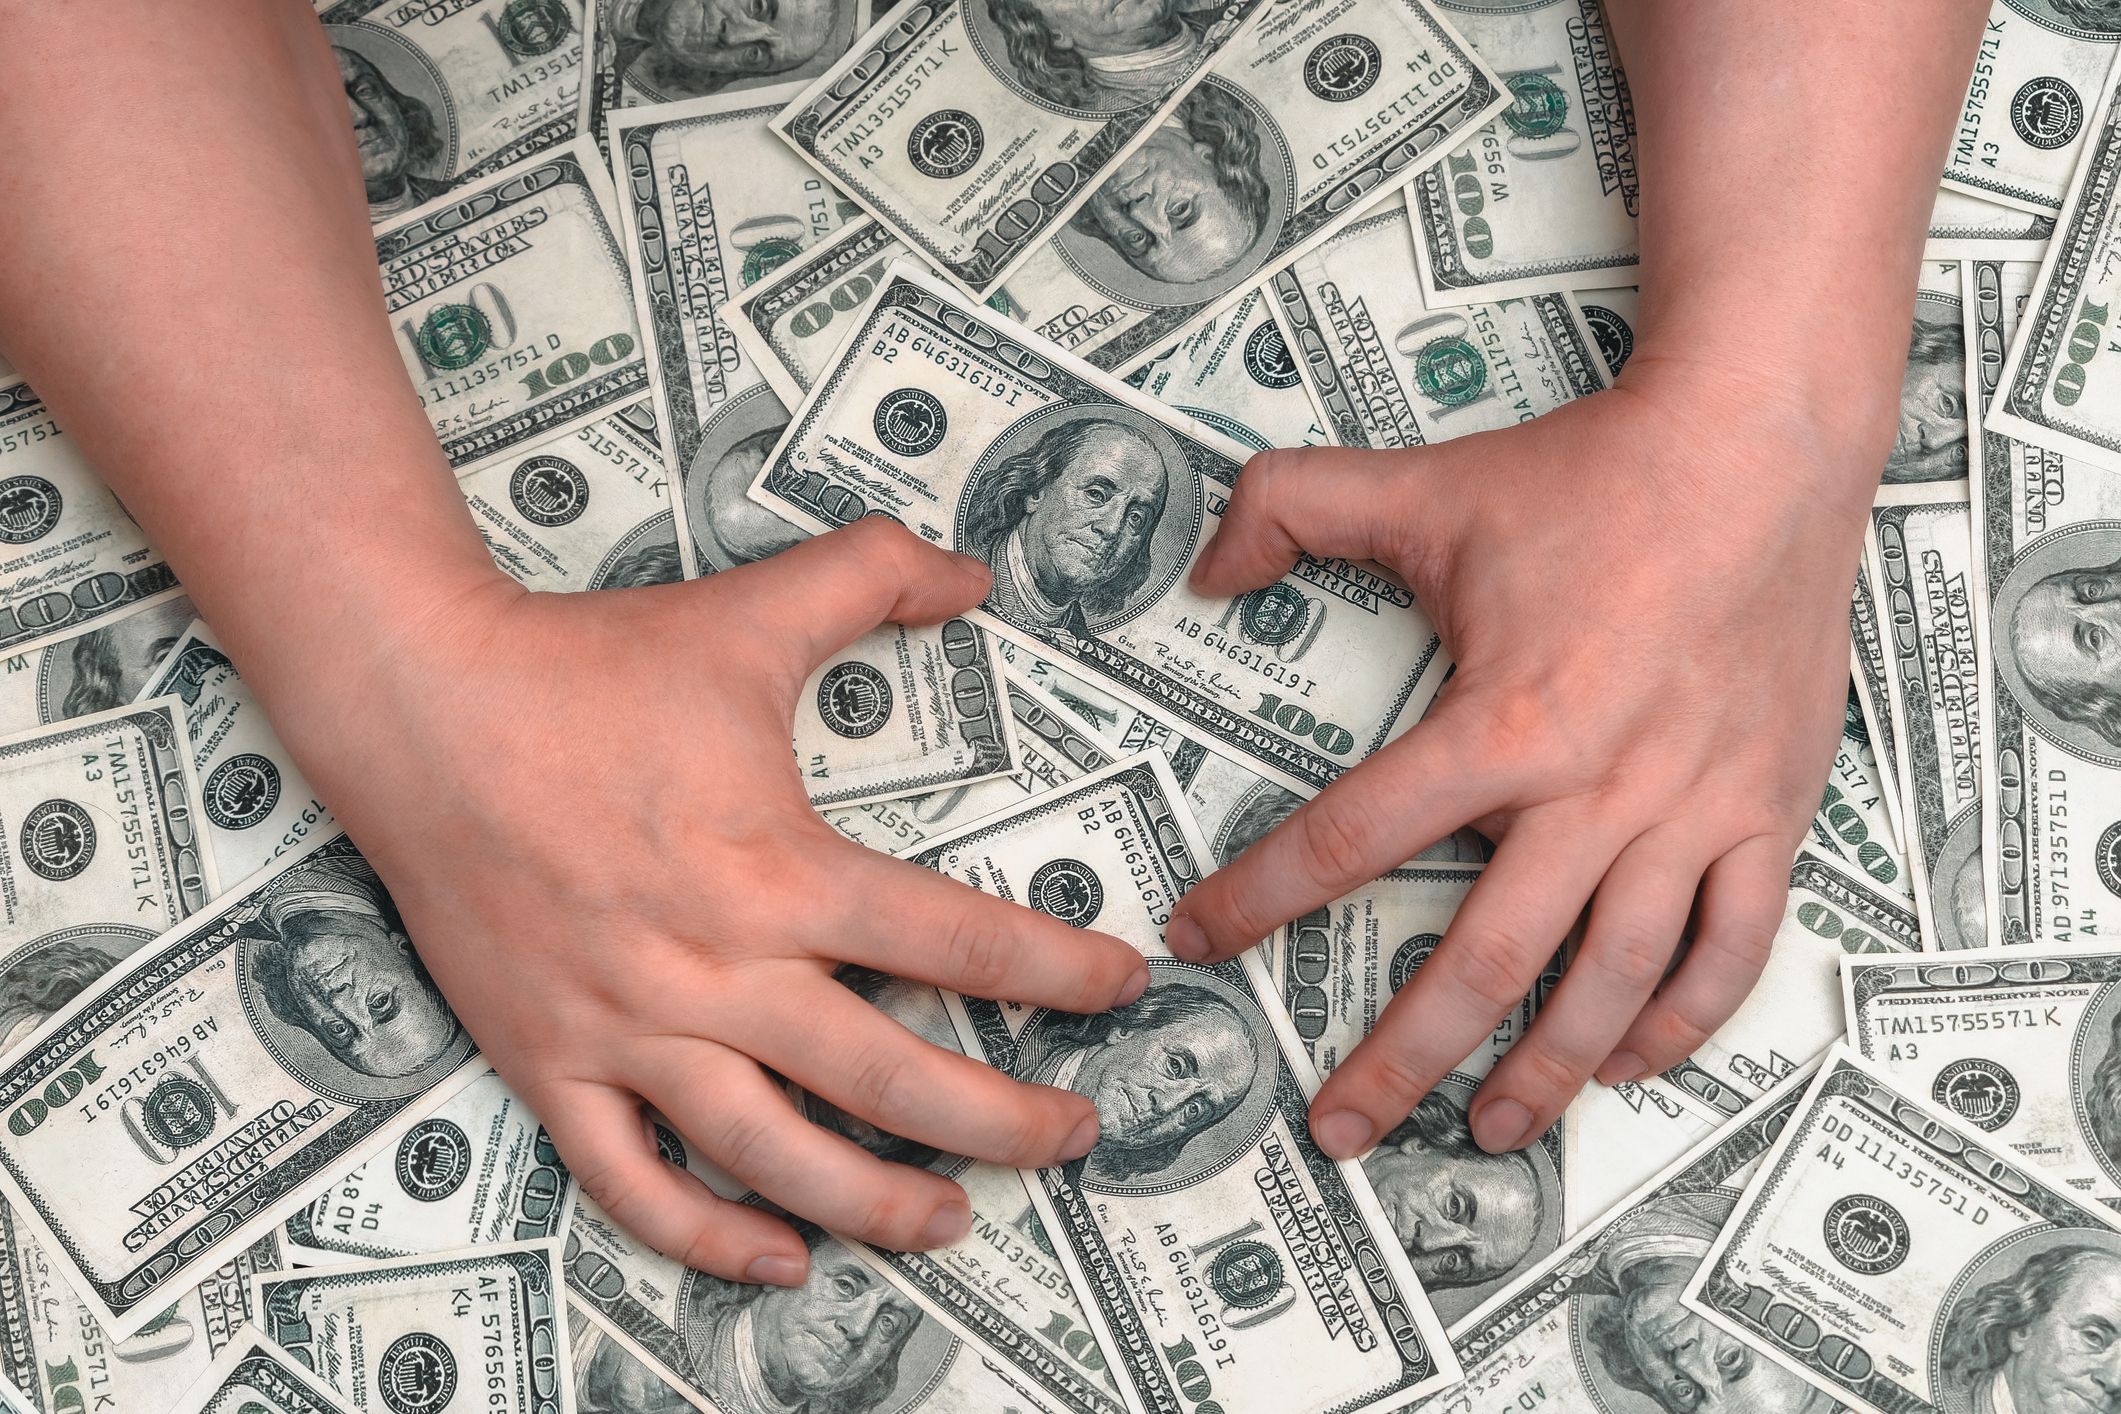 Zwei Hände halten einen großen Haufen Dollarscheine.  | Quelle: Shutterstock